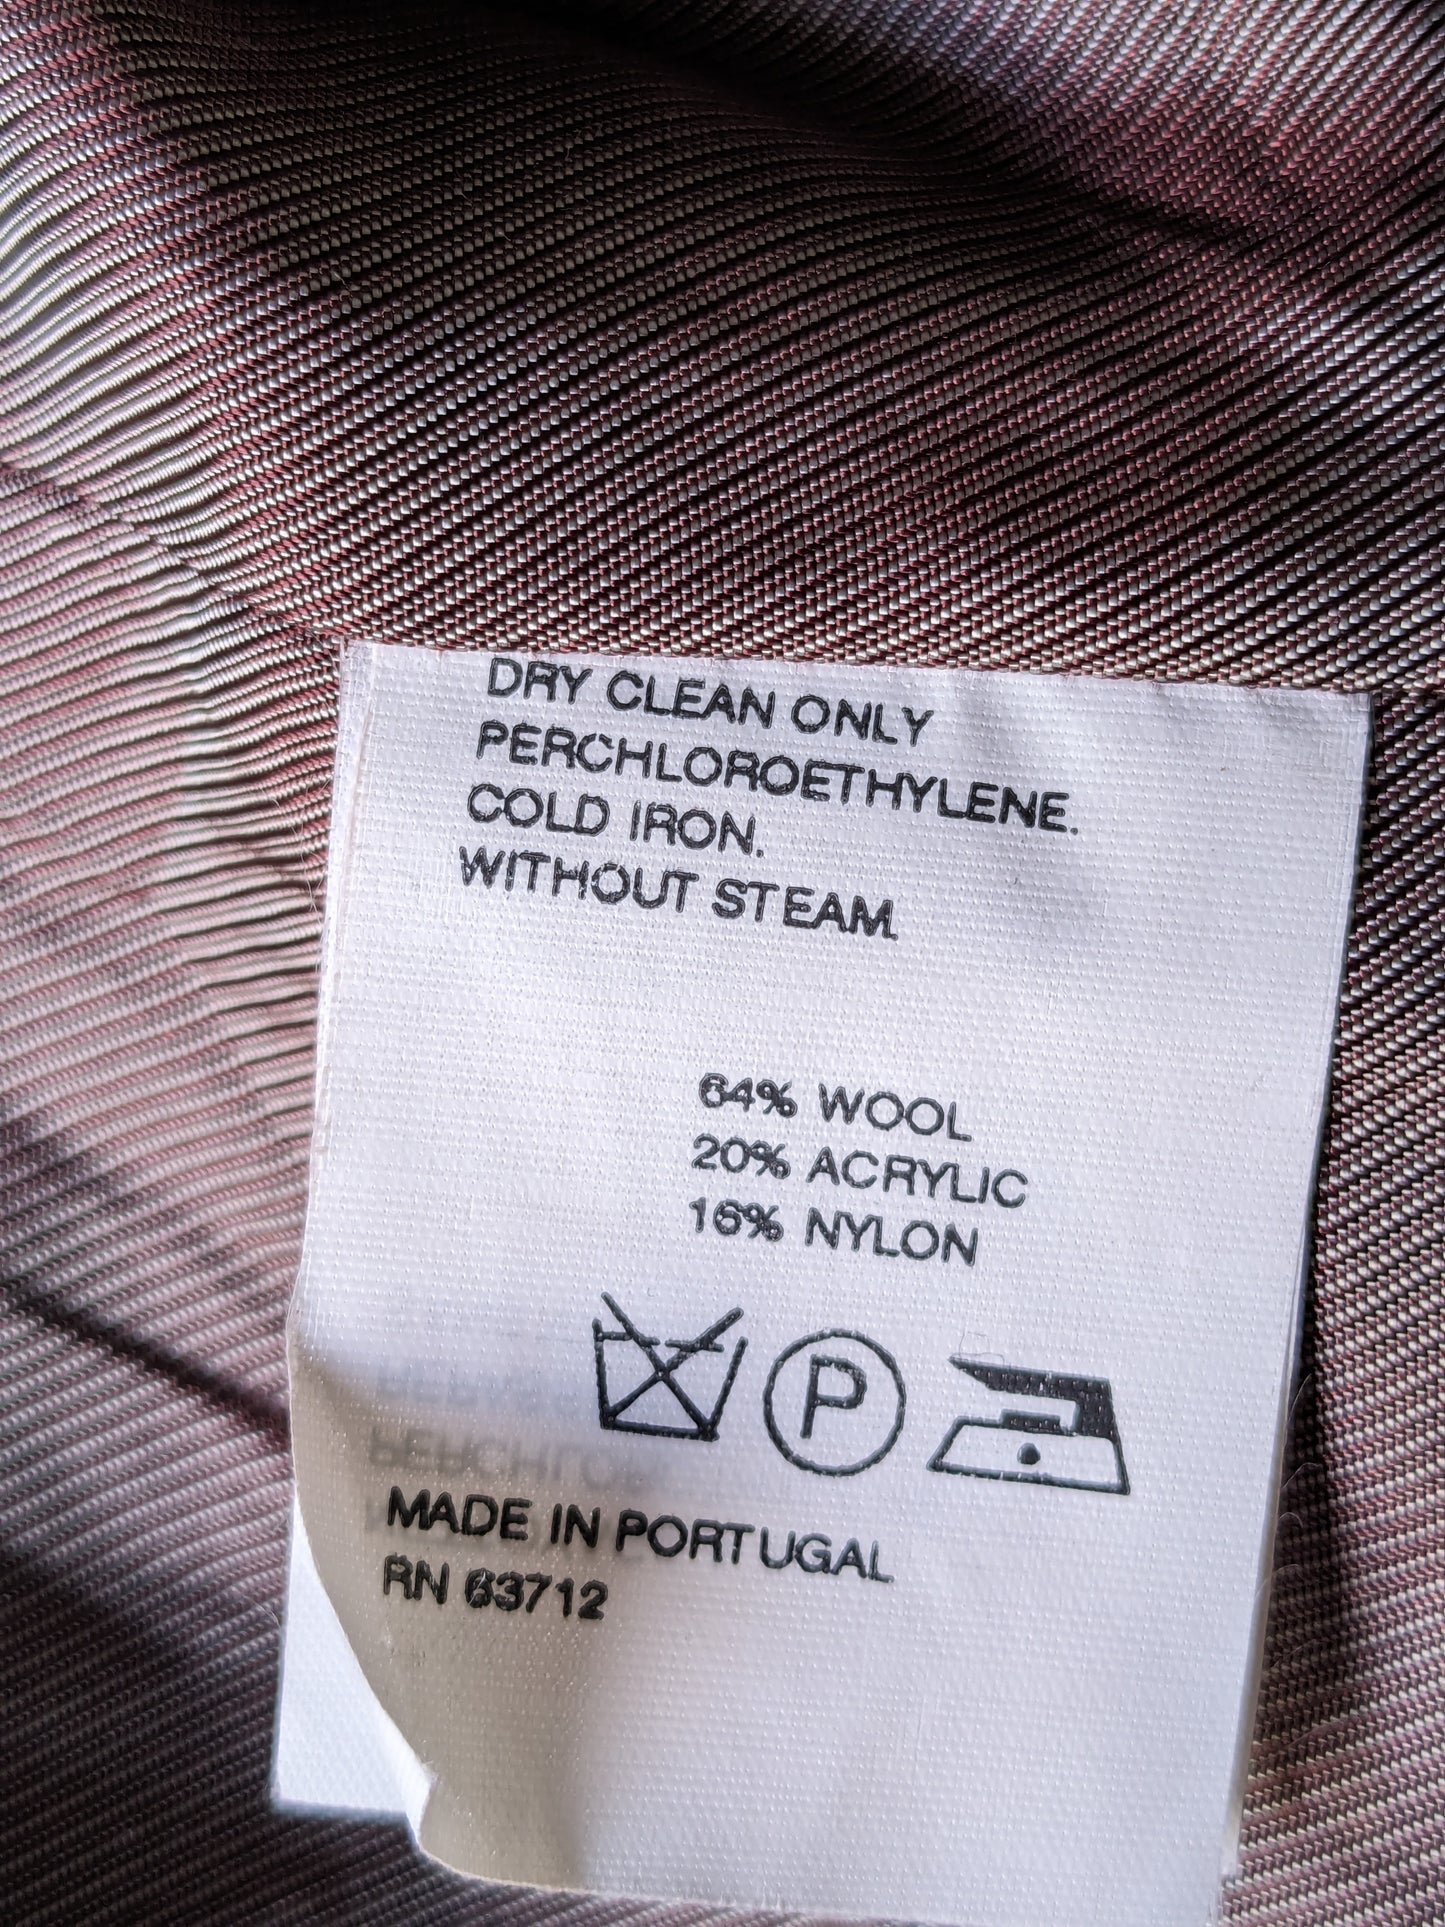 Chaqueta de lana de Matinique. Paño de Terry mixto marrón. Tamaño 56 / xl. 64% de lana.